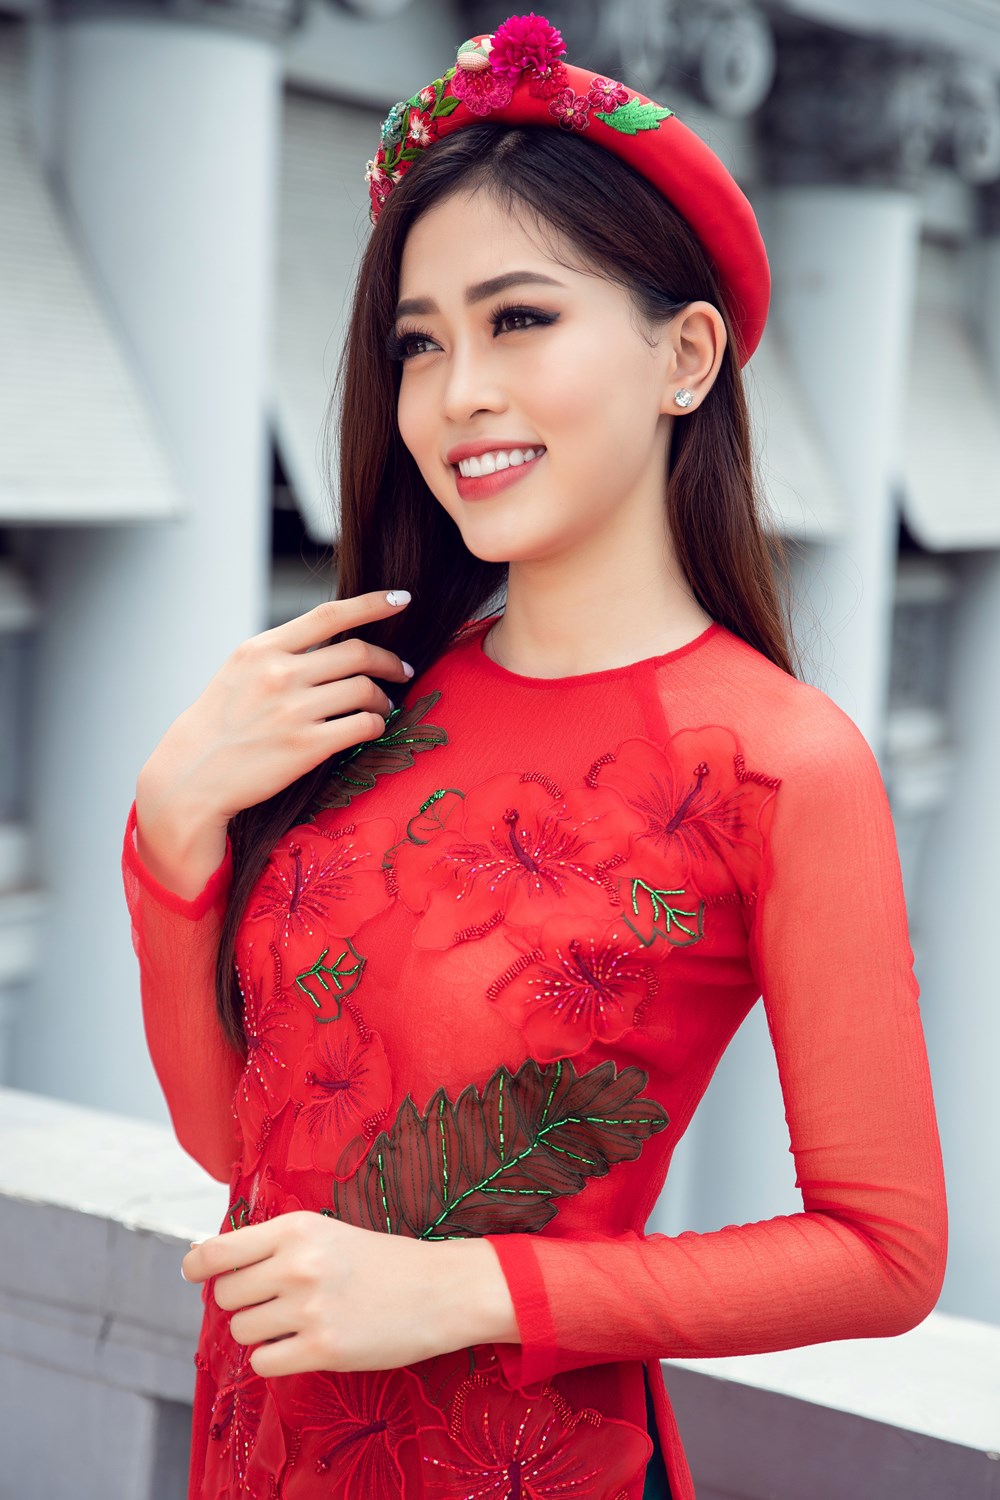 Top 3 Hoa hậu Việt Nam 2018 rạng rỡ trong bộ ảnh Tết - ảnh 3